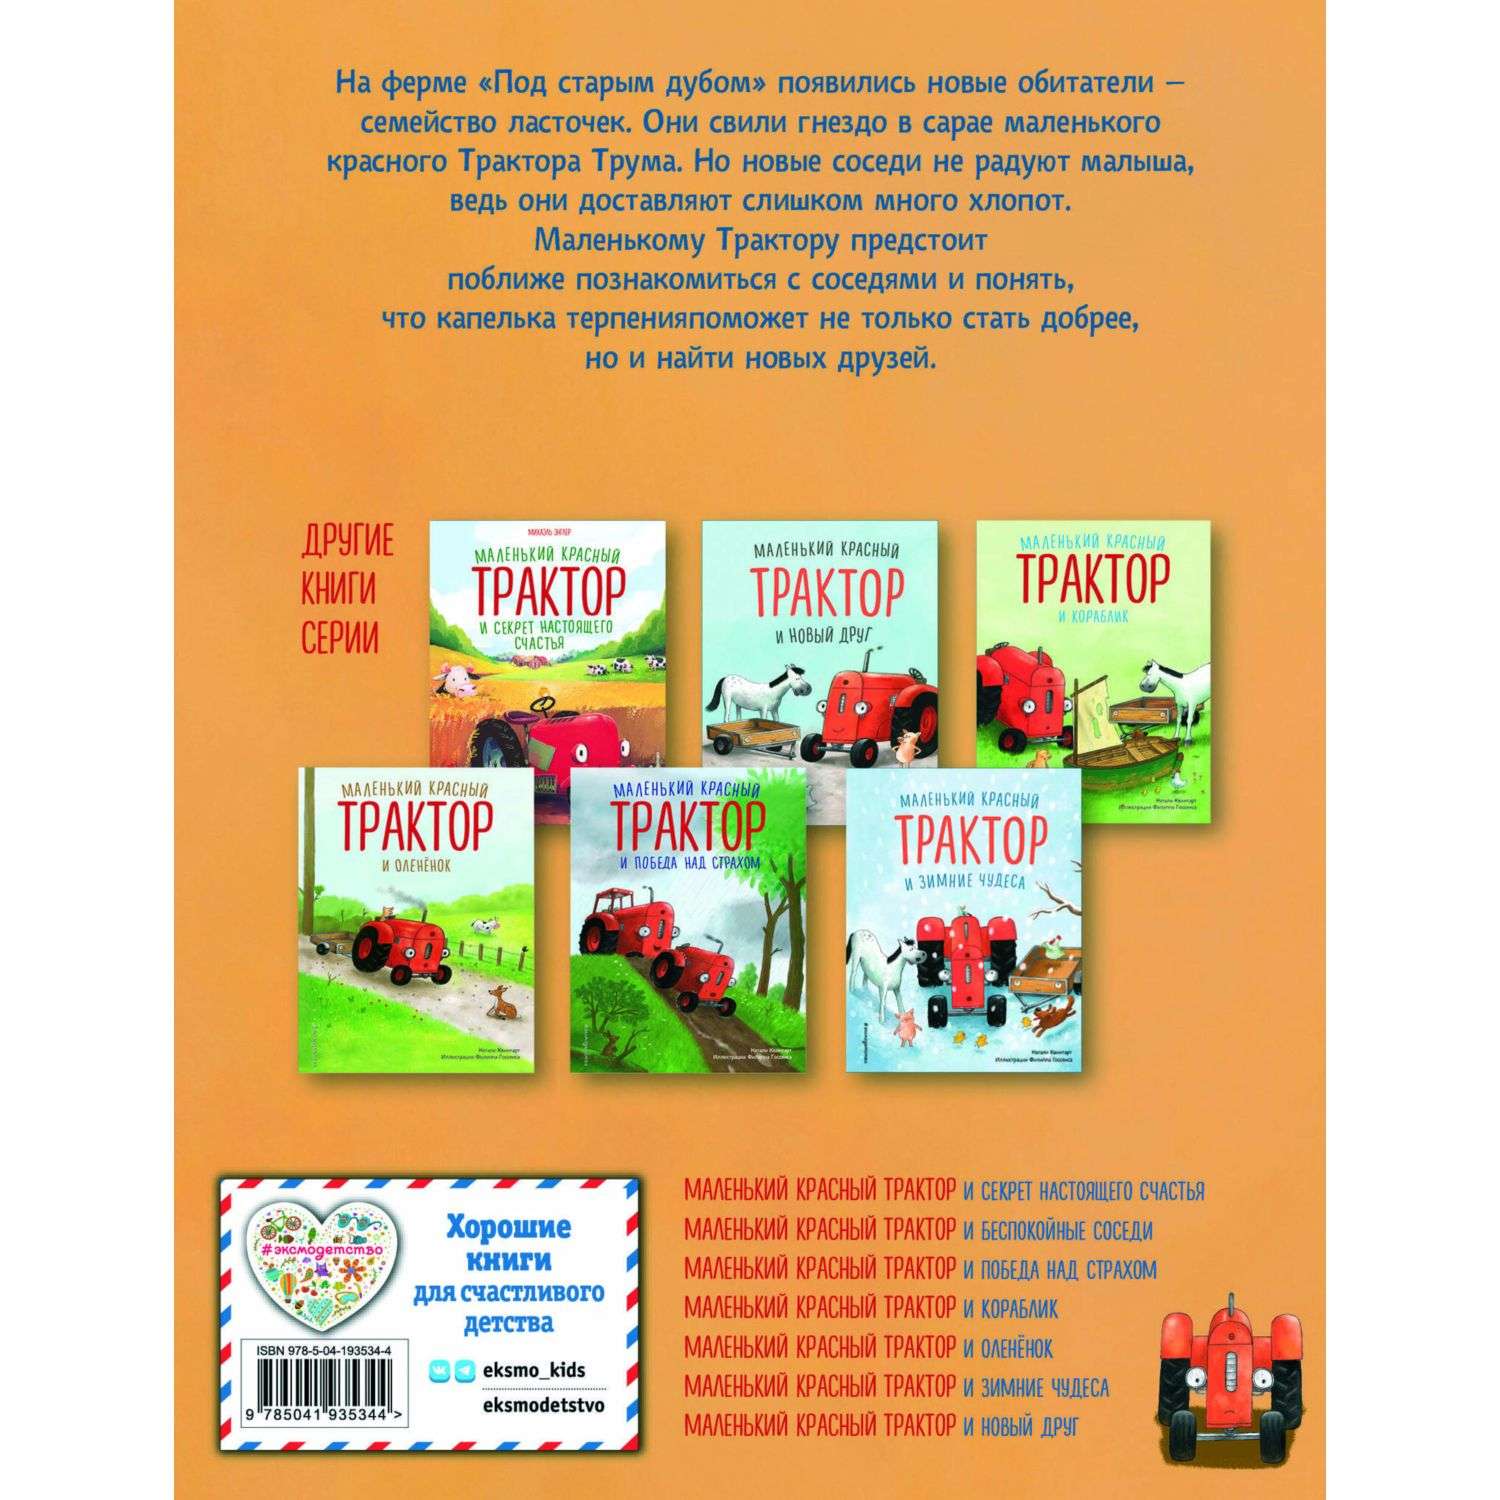 Книга Маленький красный Трактор и беспокойные соседи иллюстрации Госсенса - фото 9